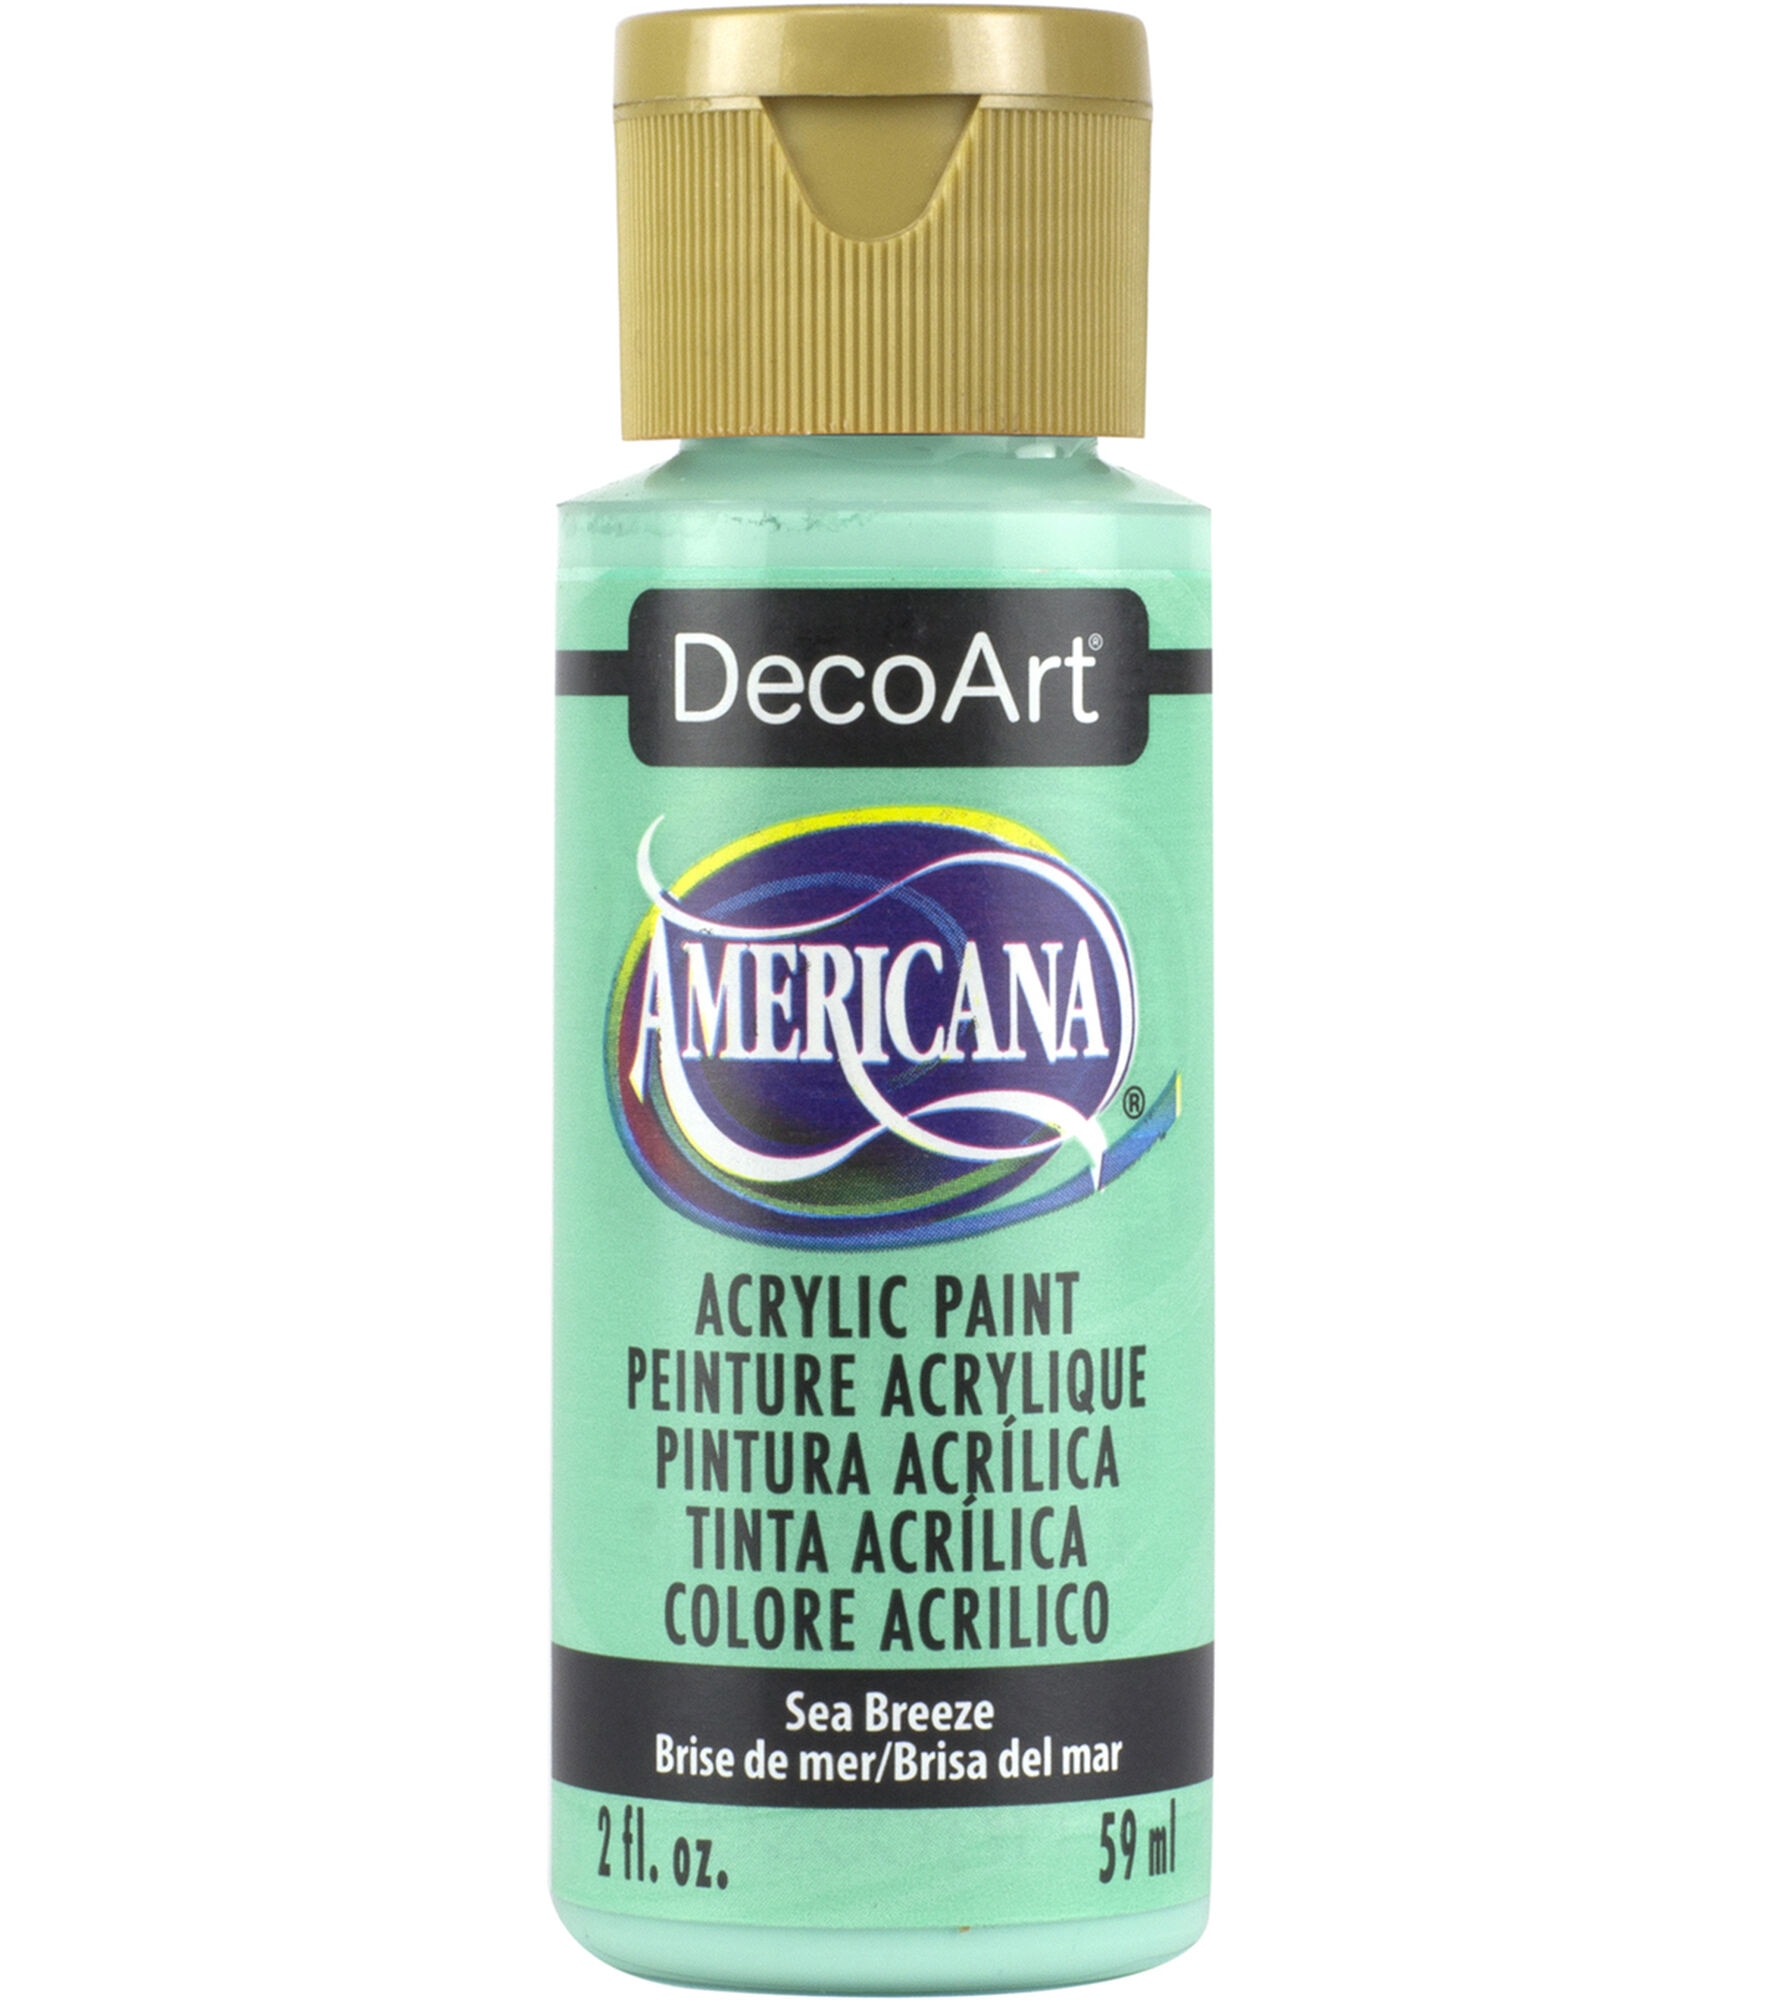 DecoArt Americana Acrylic 2oz Paint, Sea Breeze, hi-res